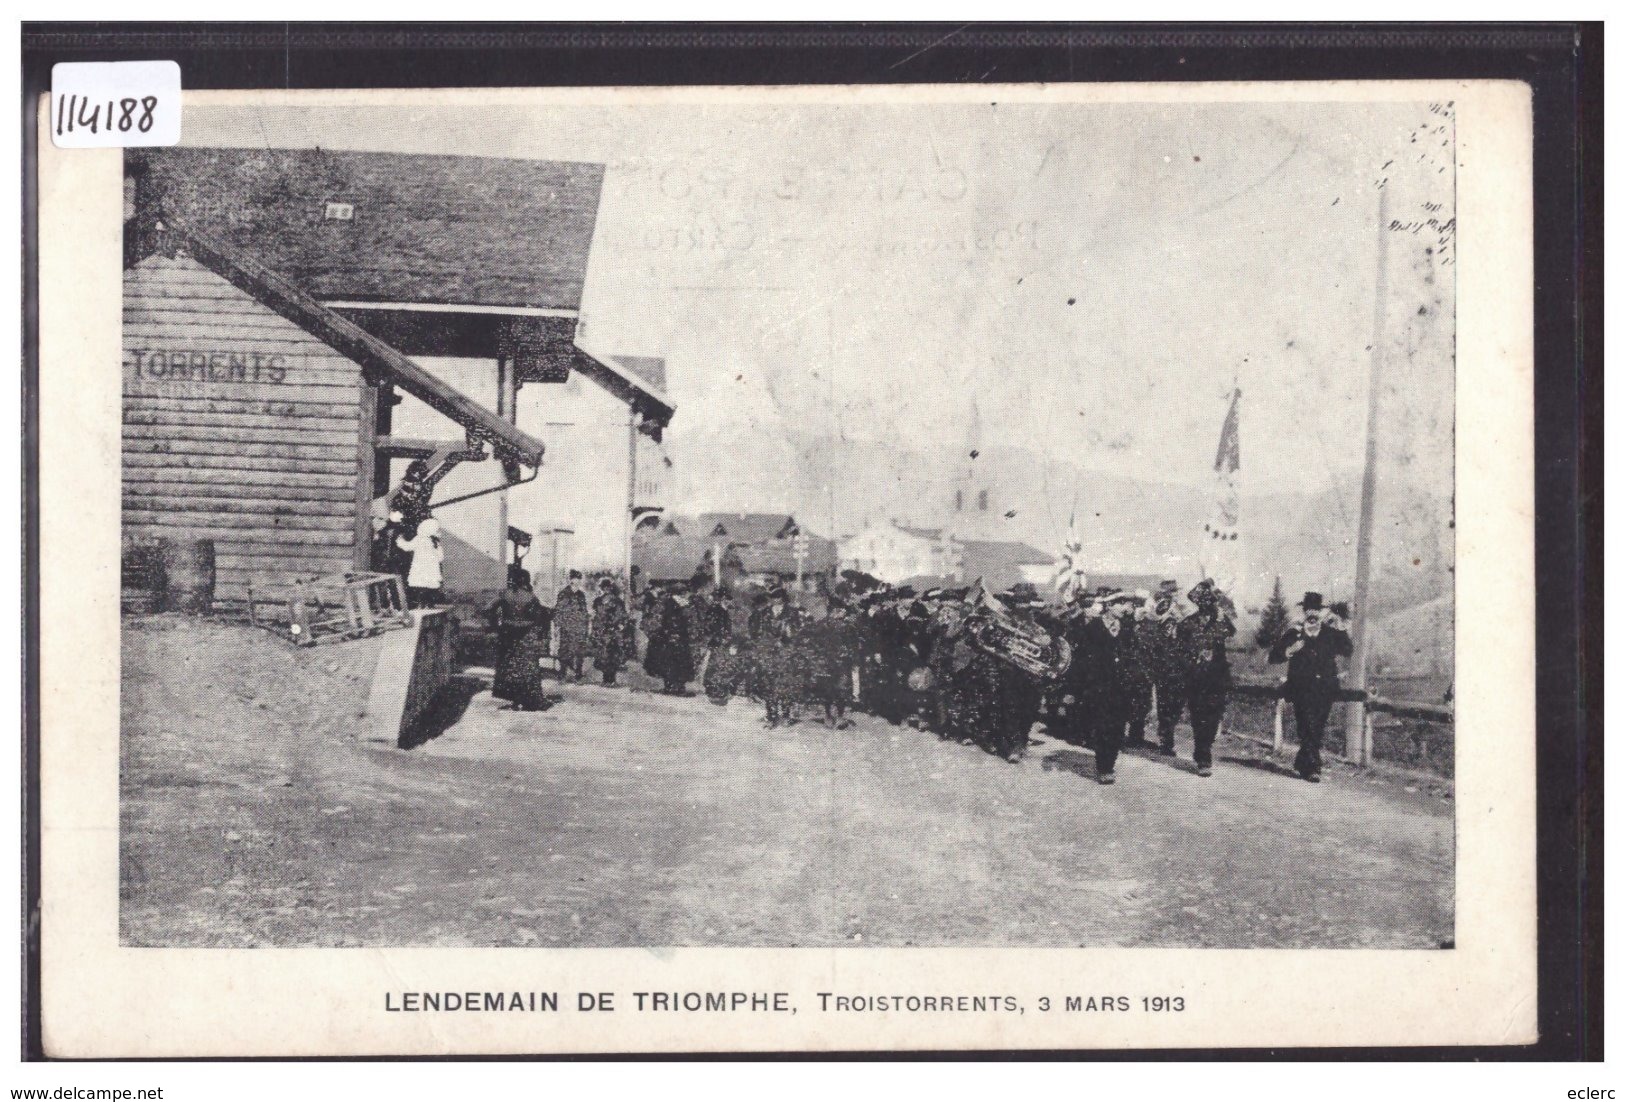 TROISTORRENTS - 3 MARS 1913 - LENDEMAIN DE TRIOMPHE - B ( LEGER PLI EN BAS ) - Troistorrents